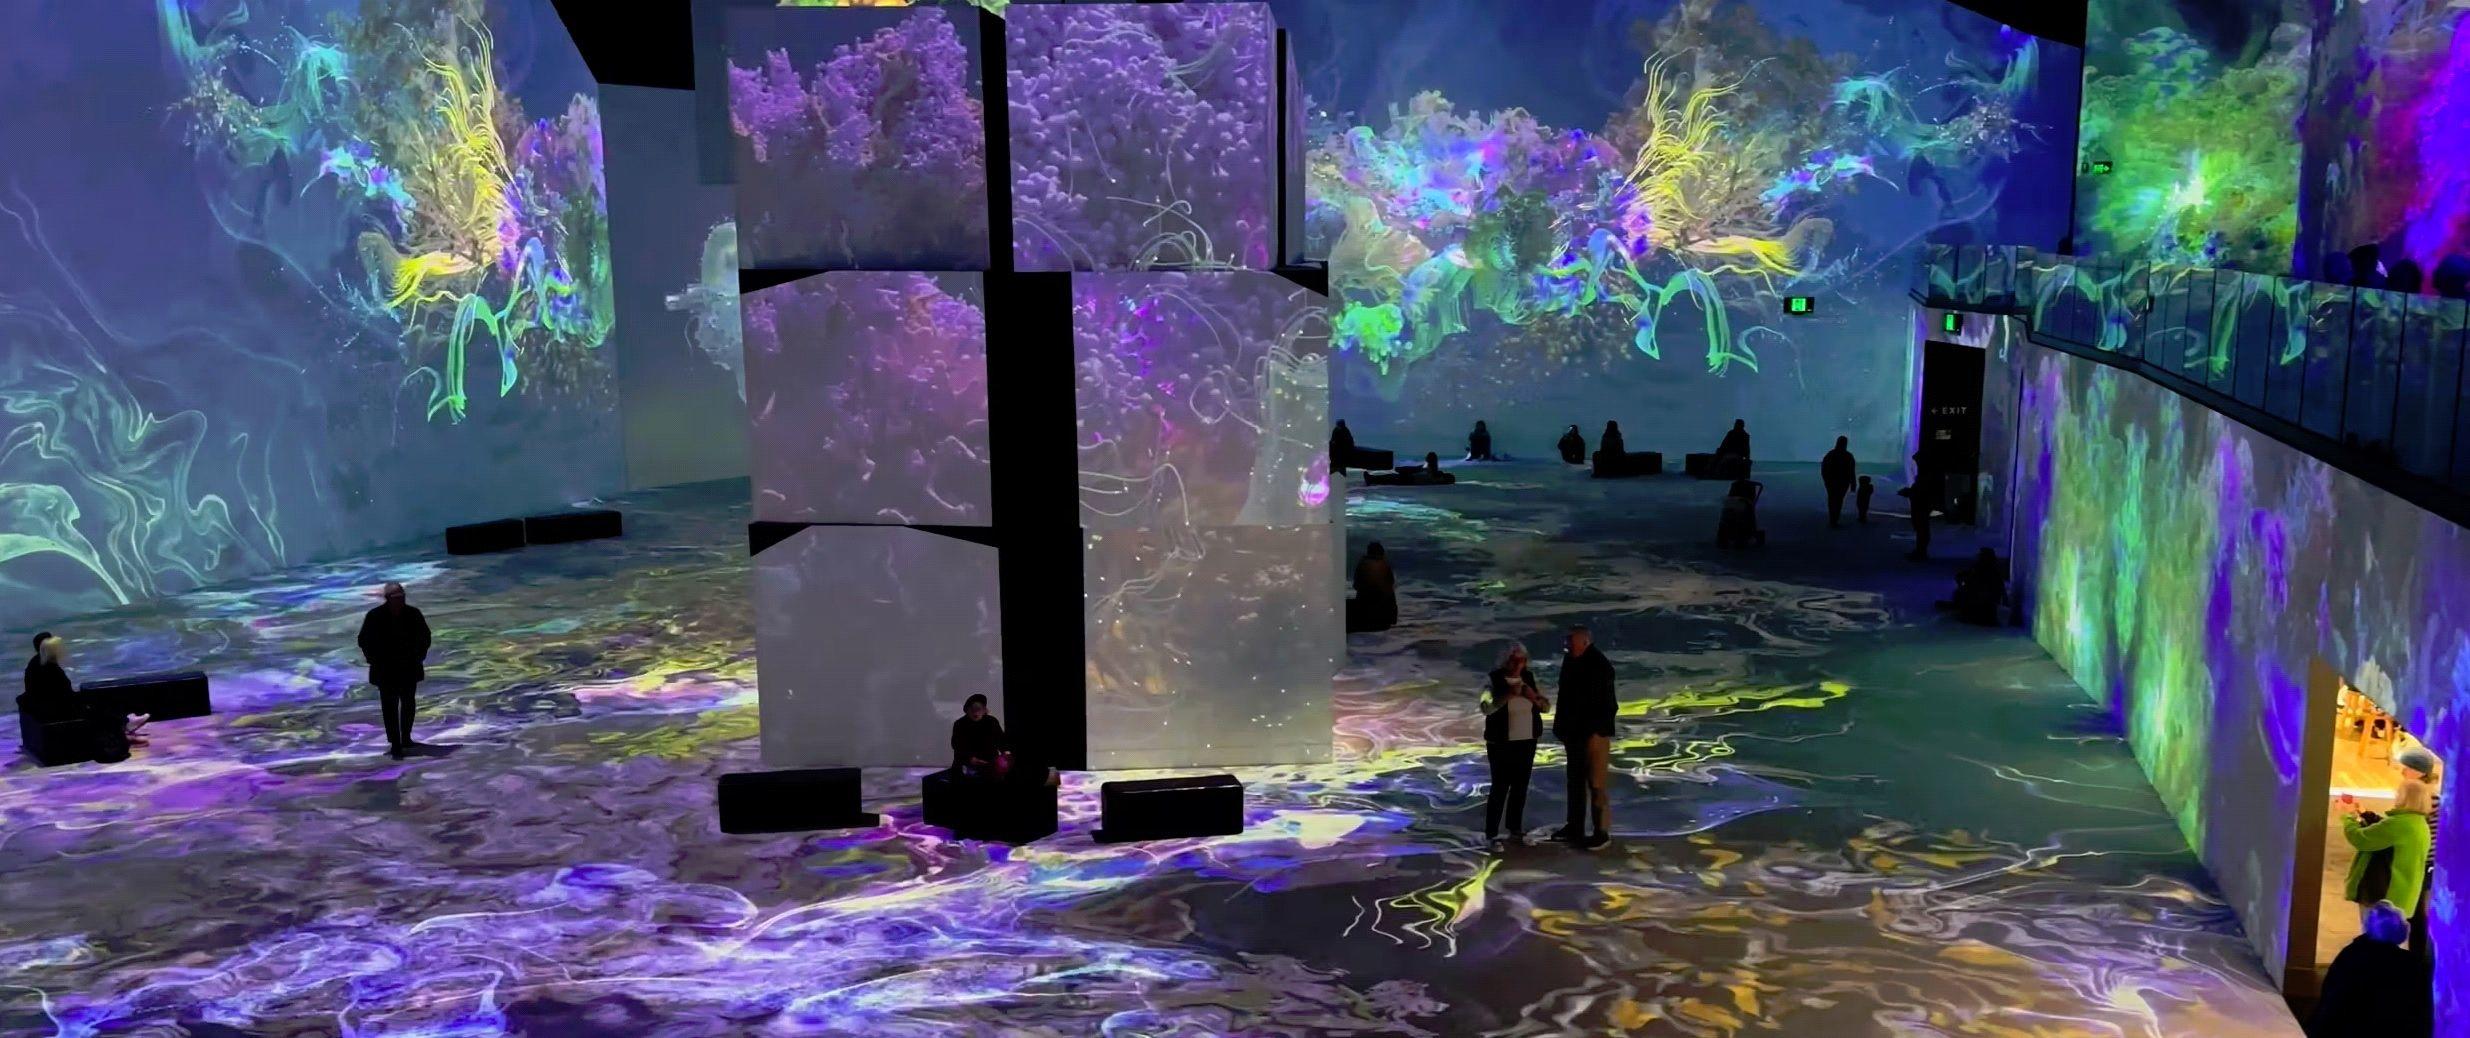 «Artificial Dream», qui démarre ce jeudi au Grand Palais immersif à Bastille (Paris, XIIe), se vit comme une expérience et plonge, en nocturne seulement, le visiteur au cœur d’œuvres toutes singulières. Bioluminescence/Andy Thomas